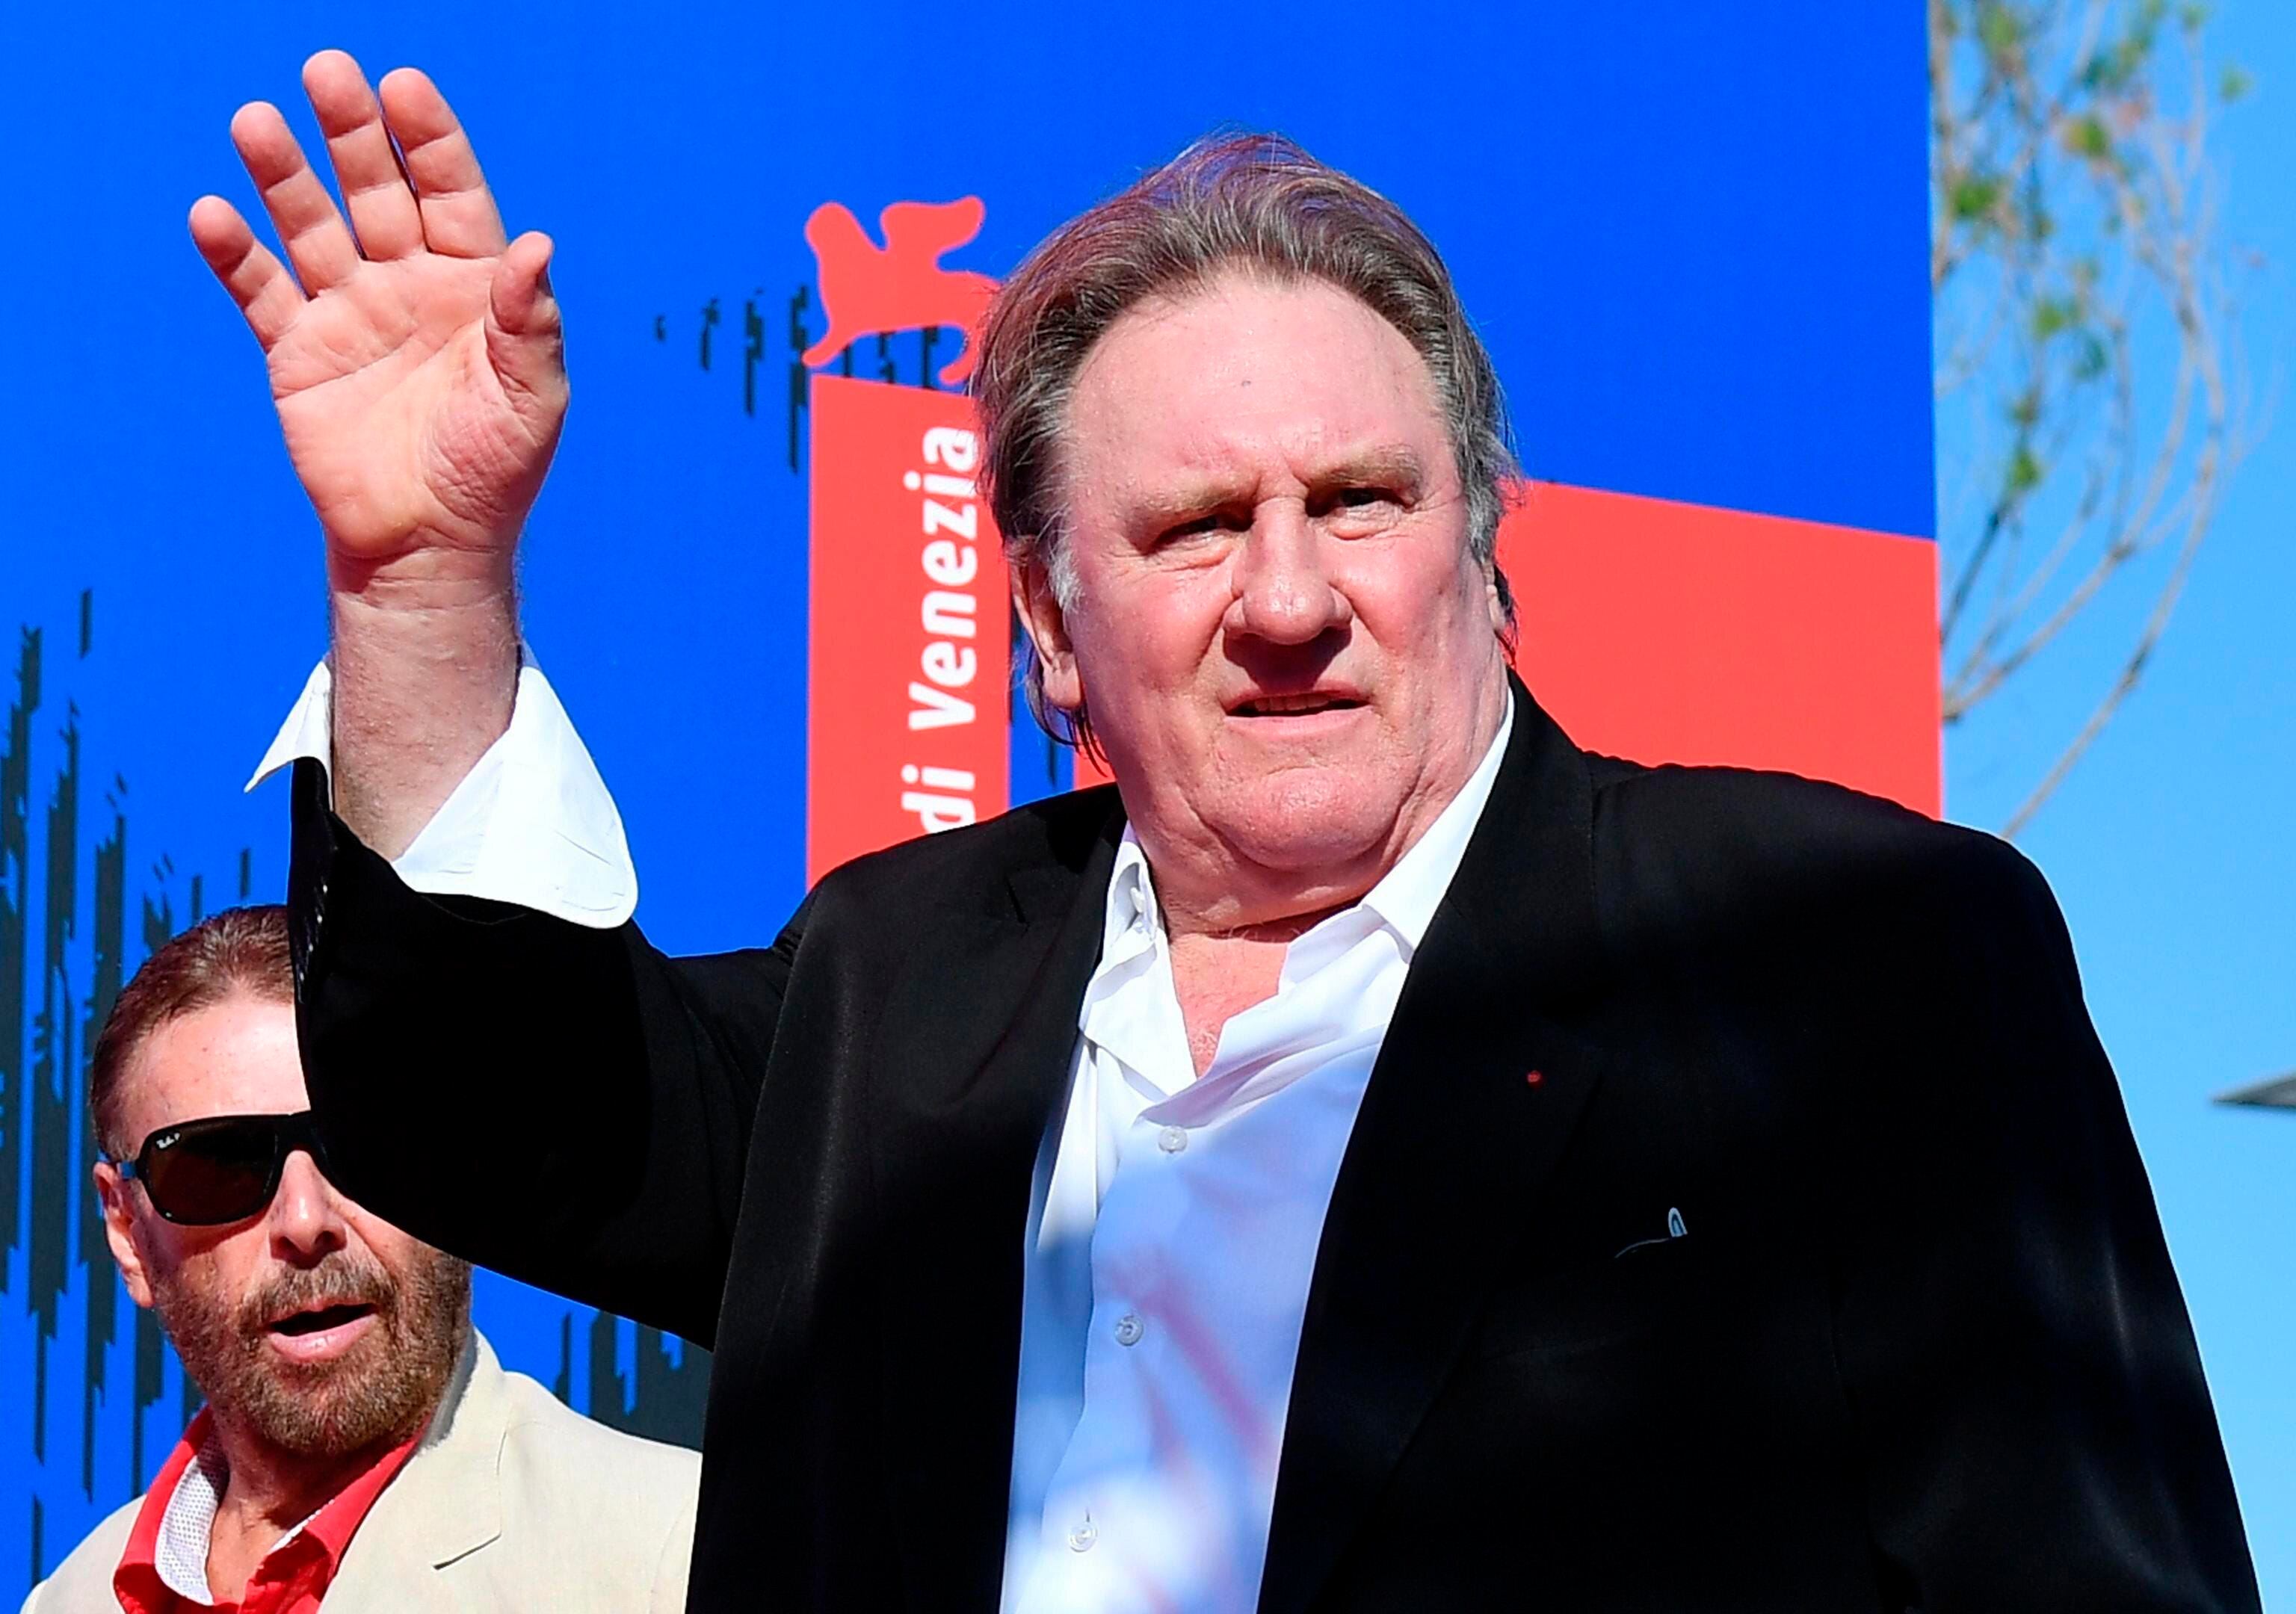 Los familiares de Gérard Depardieu han hablado en contra de lo que han caracterizado como una “persecución sin precedentes” del actor francés.